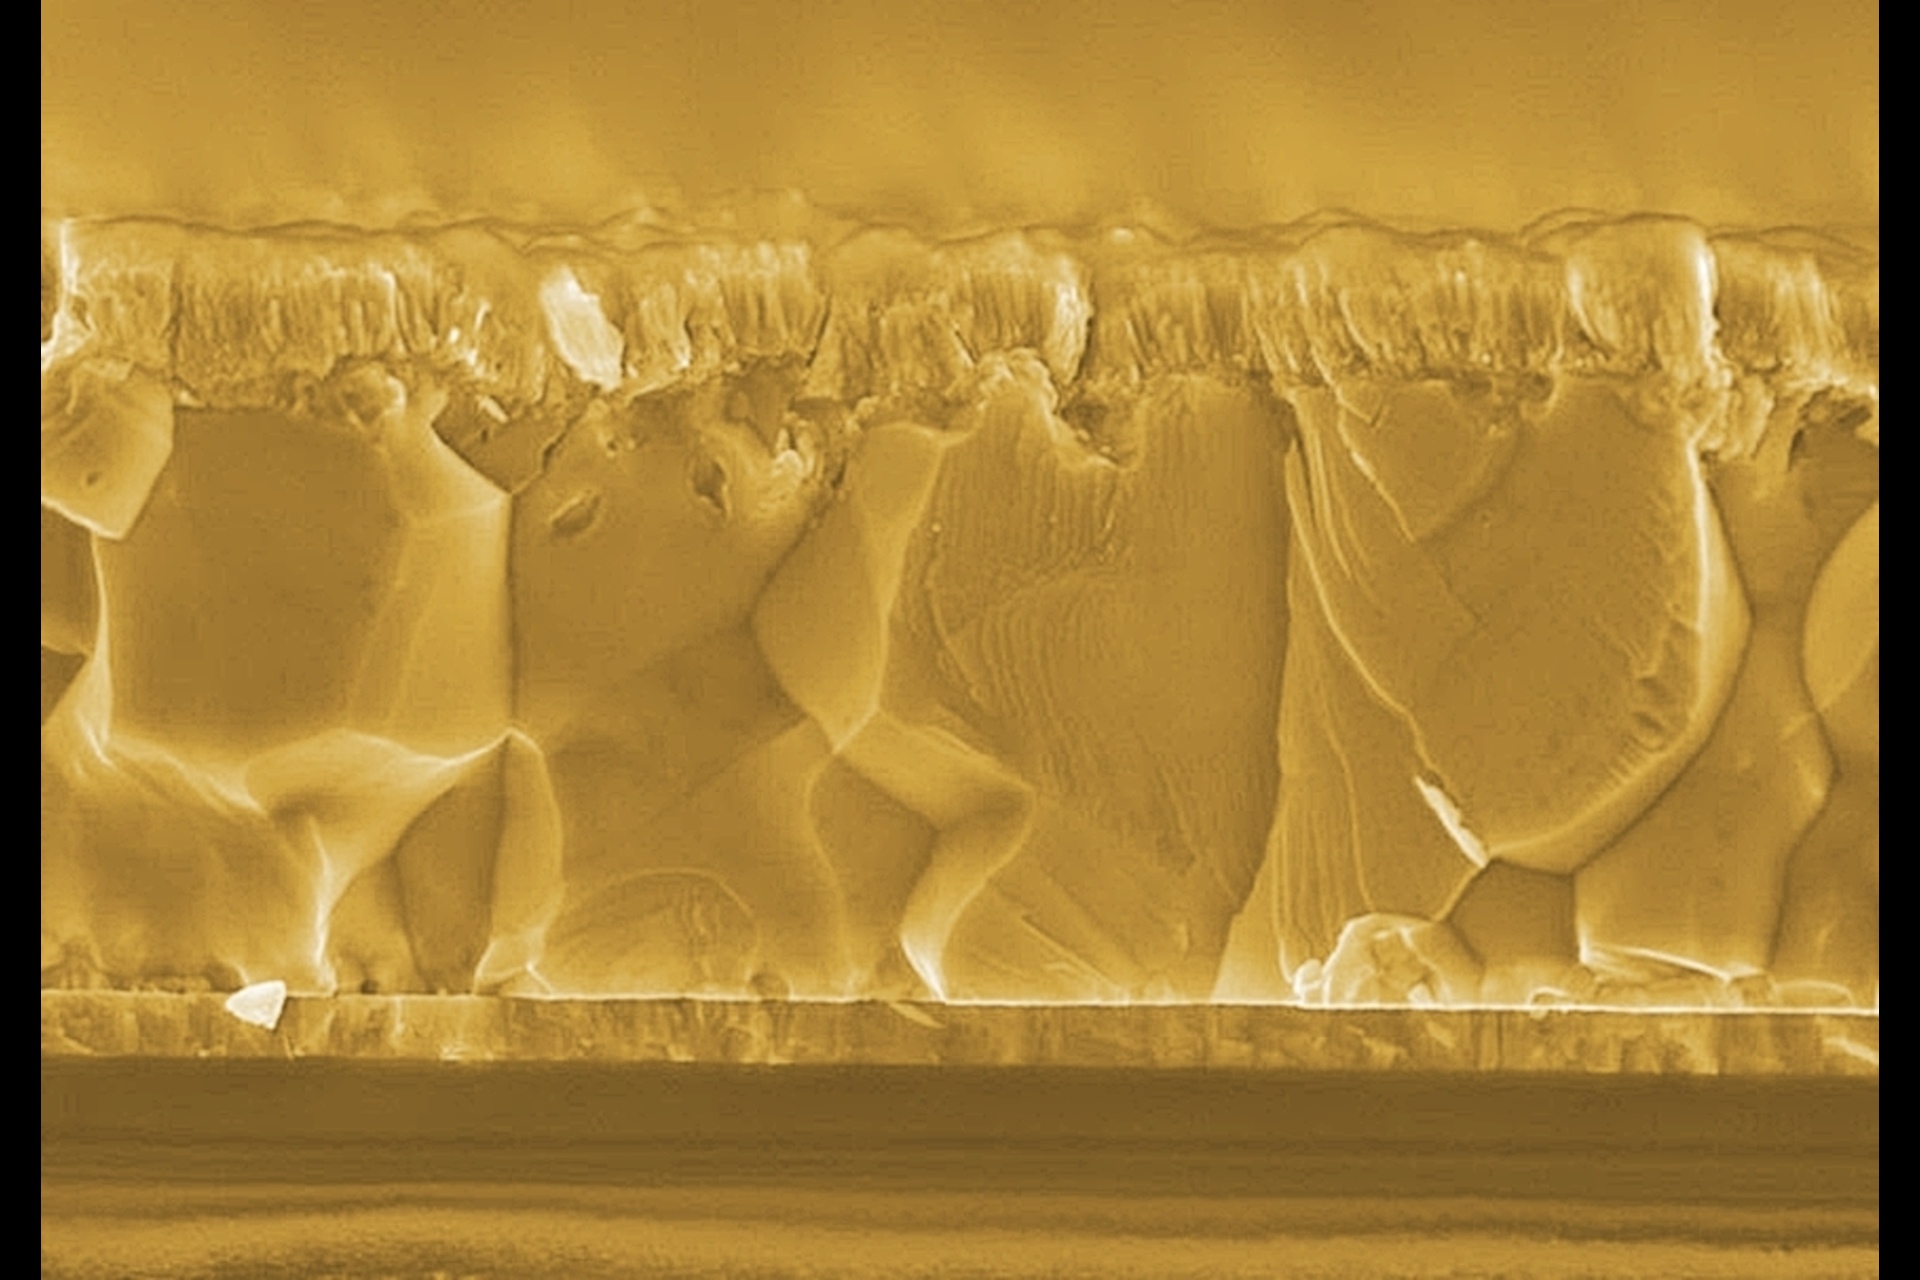 Bifacialiniai saulės elementai: Bifacialiniai CIGS saulės elementai susideda iš labai plonų sluoksnių, kurių bendras aktyviųjų medžiagų dydis yra tik 3 µm: nusodintas ant skaidraus elektrinio kontakto, CIGS polikristalinis sluoksnis sugeria šviesą tiek iš priekinės, tiek iš galinės pusės.